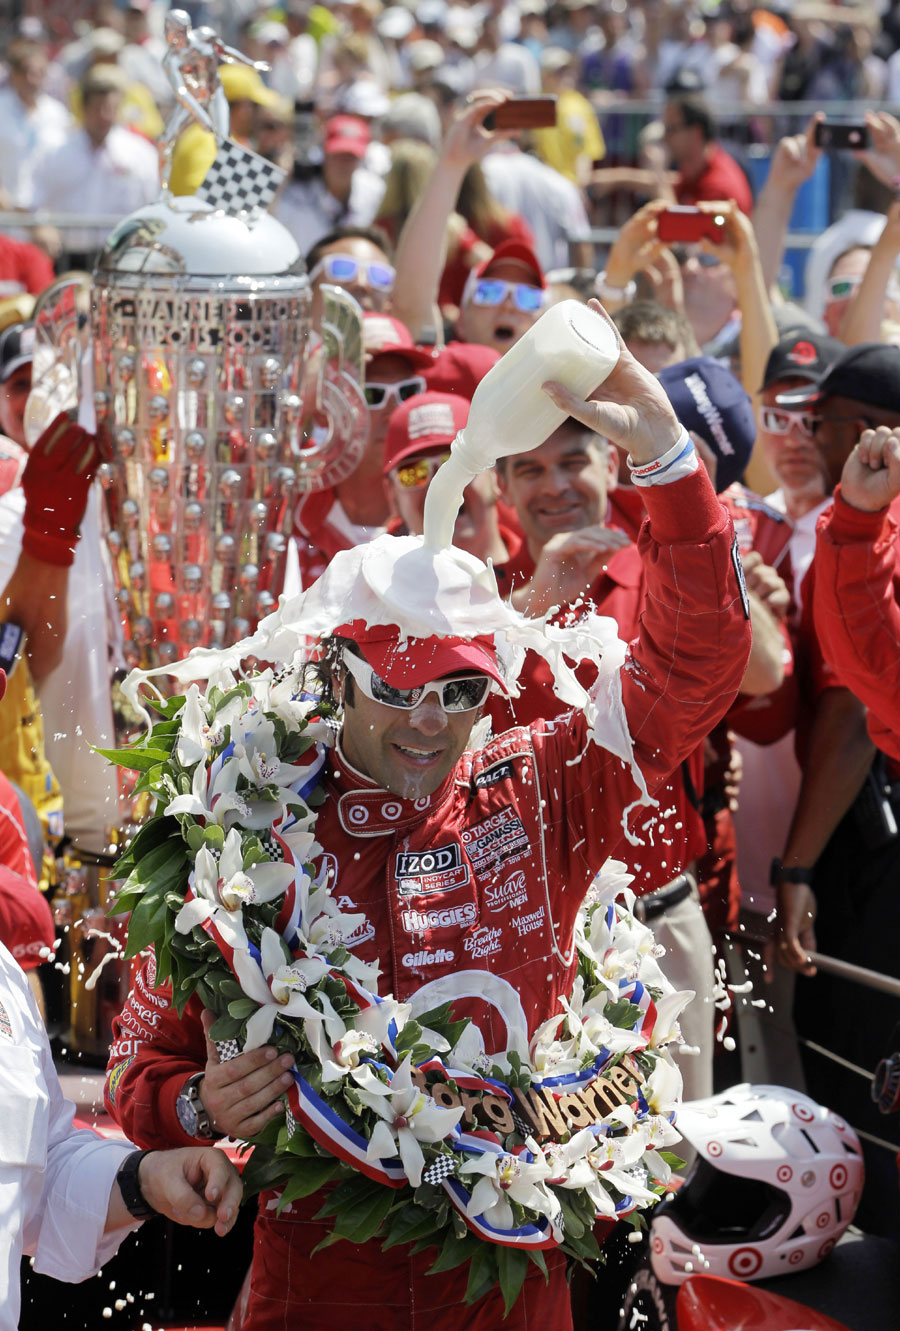 Dario Franchitti celebrates winning his third Indy 500 crown 